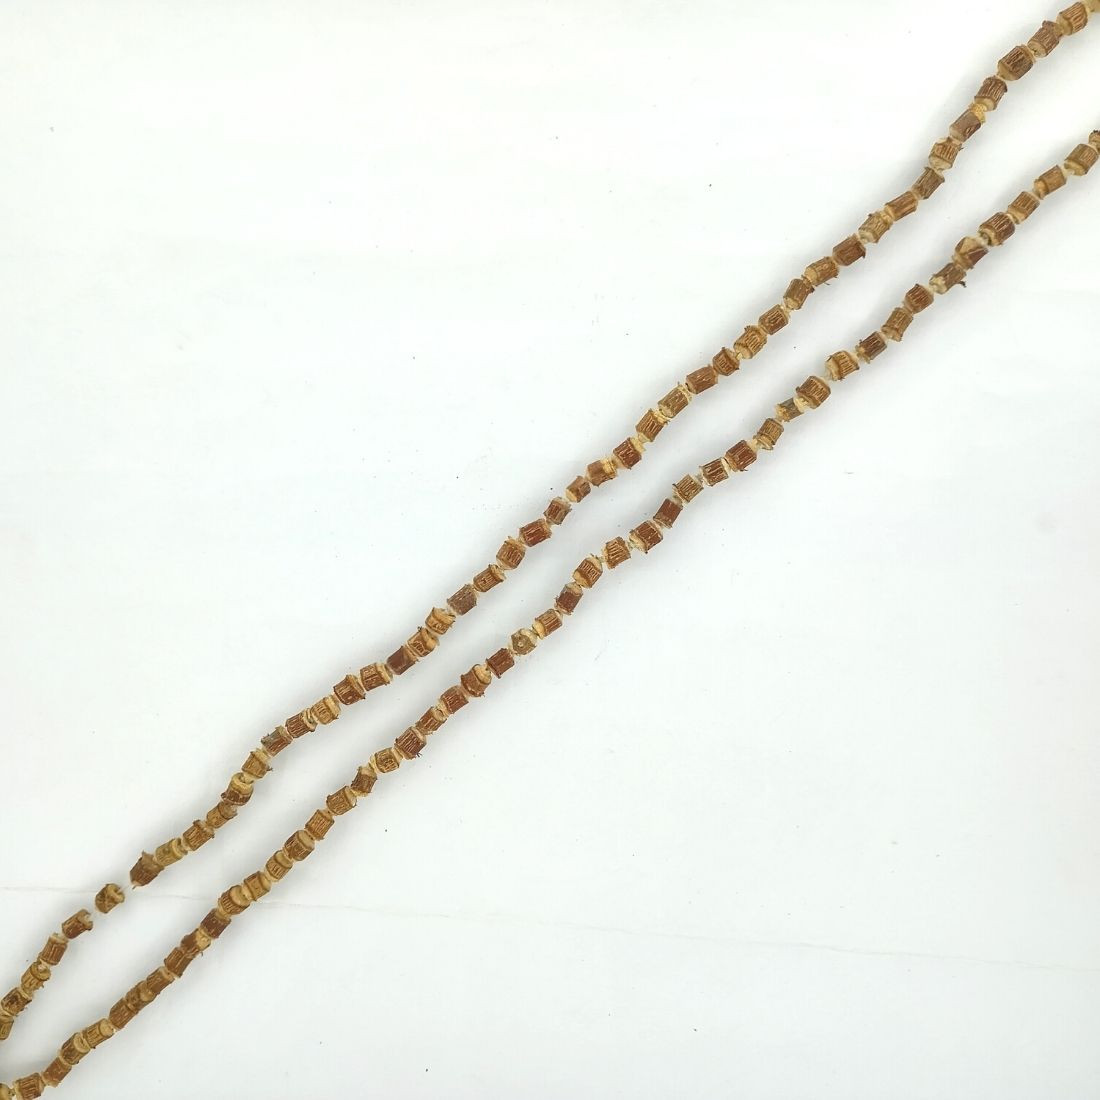 8 mm Tulsi Holy Basil Hare Rama Krishna Hand Knotted Mala Beads Necklace  Energized Karma Nirvana Meditation 108 1 Beads For Awakening Chakra